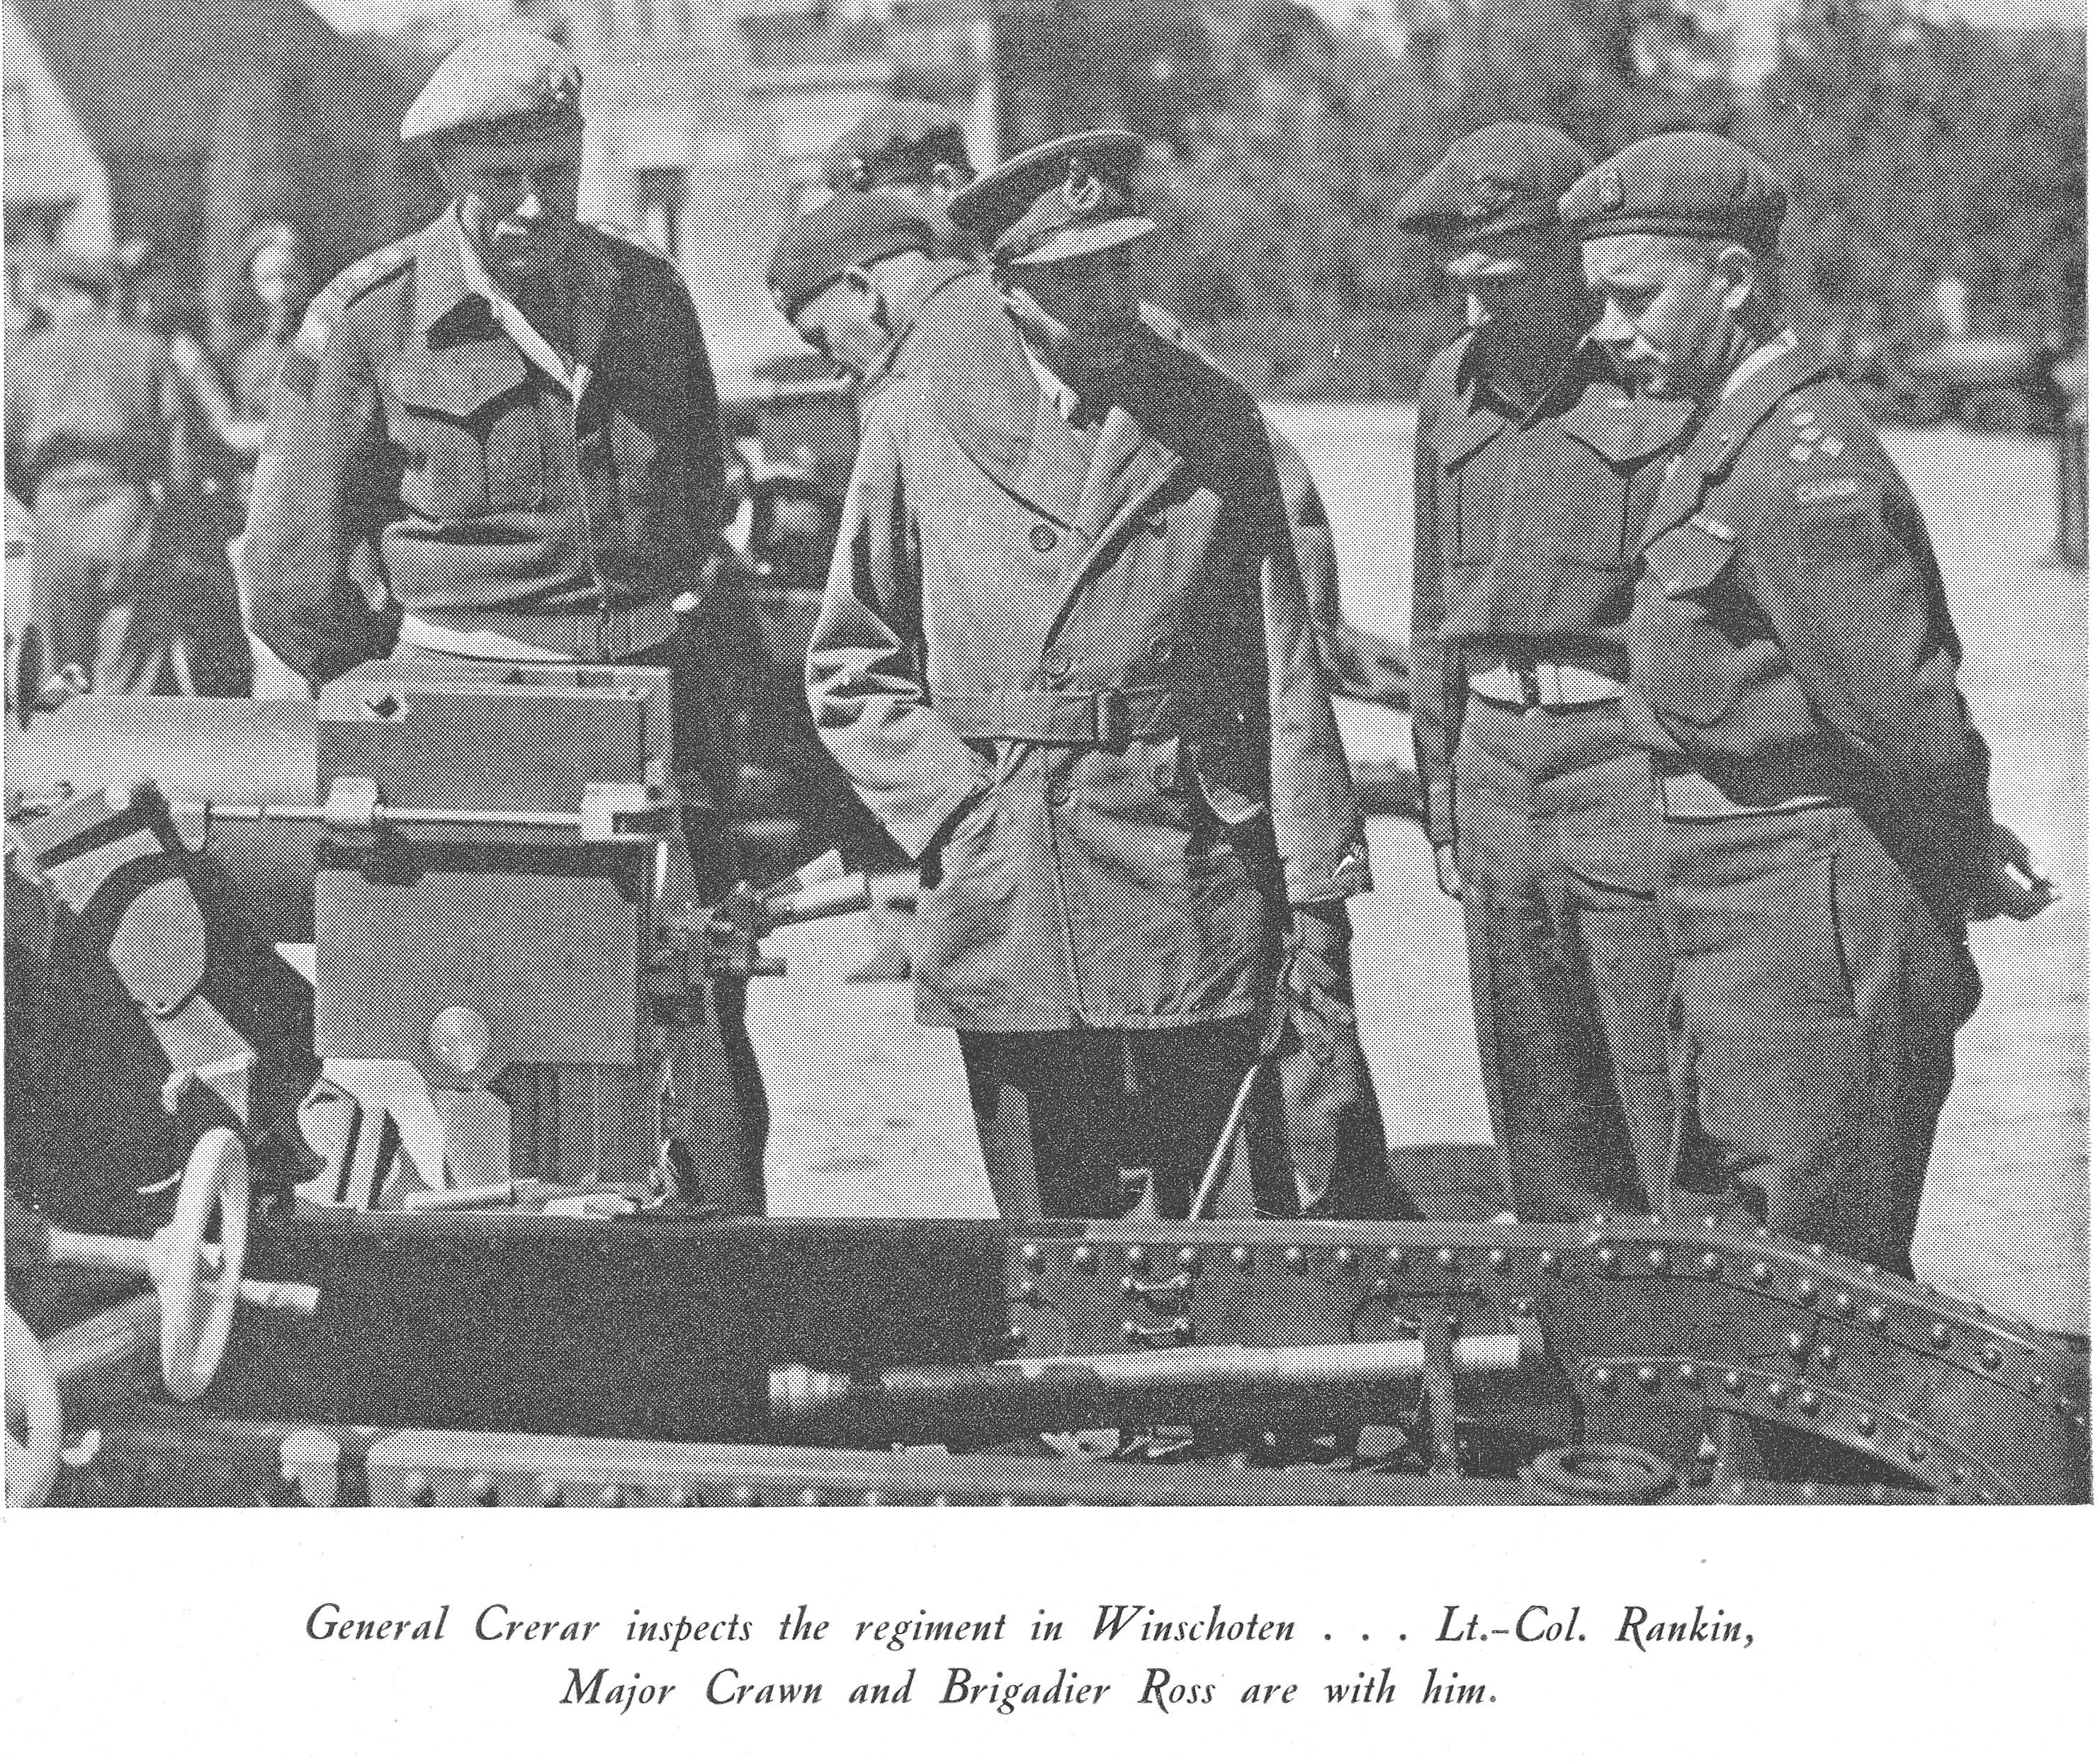 Rankin, Crerar, Crown and Ross inspect an artillery gun